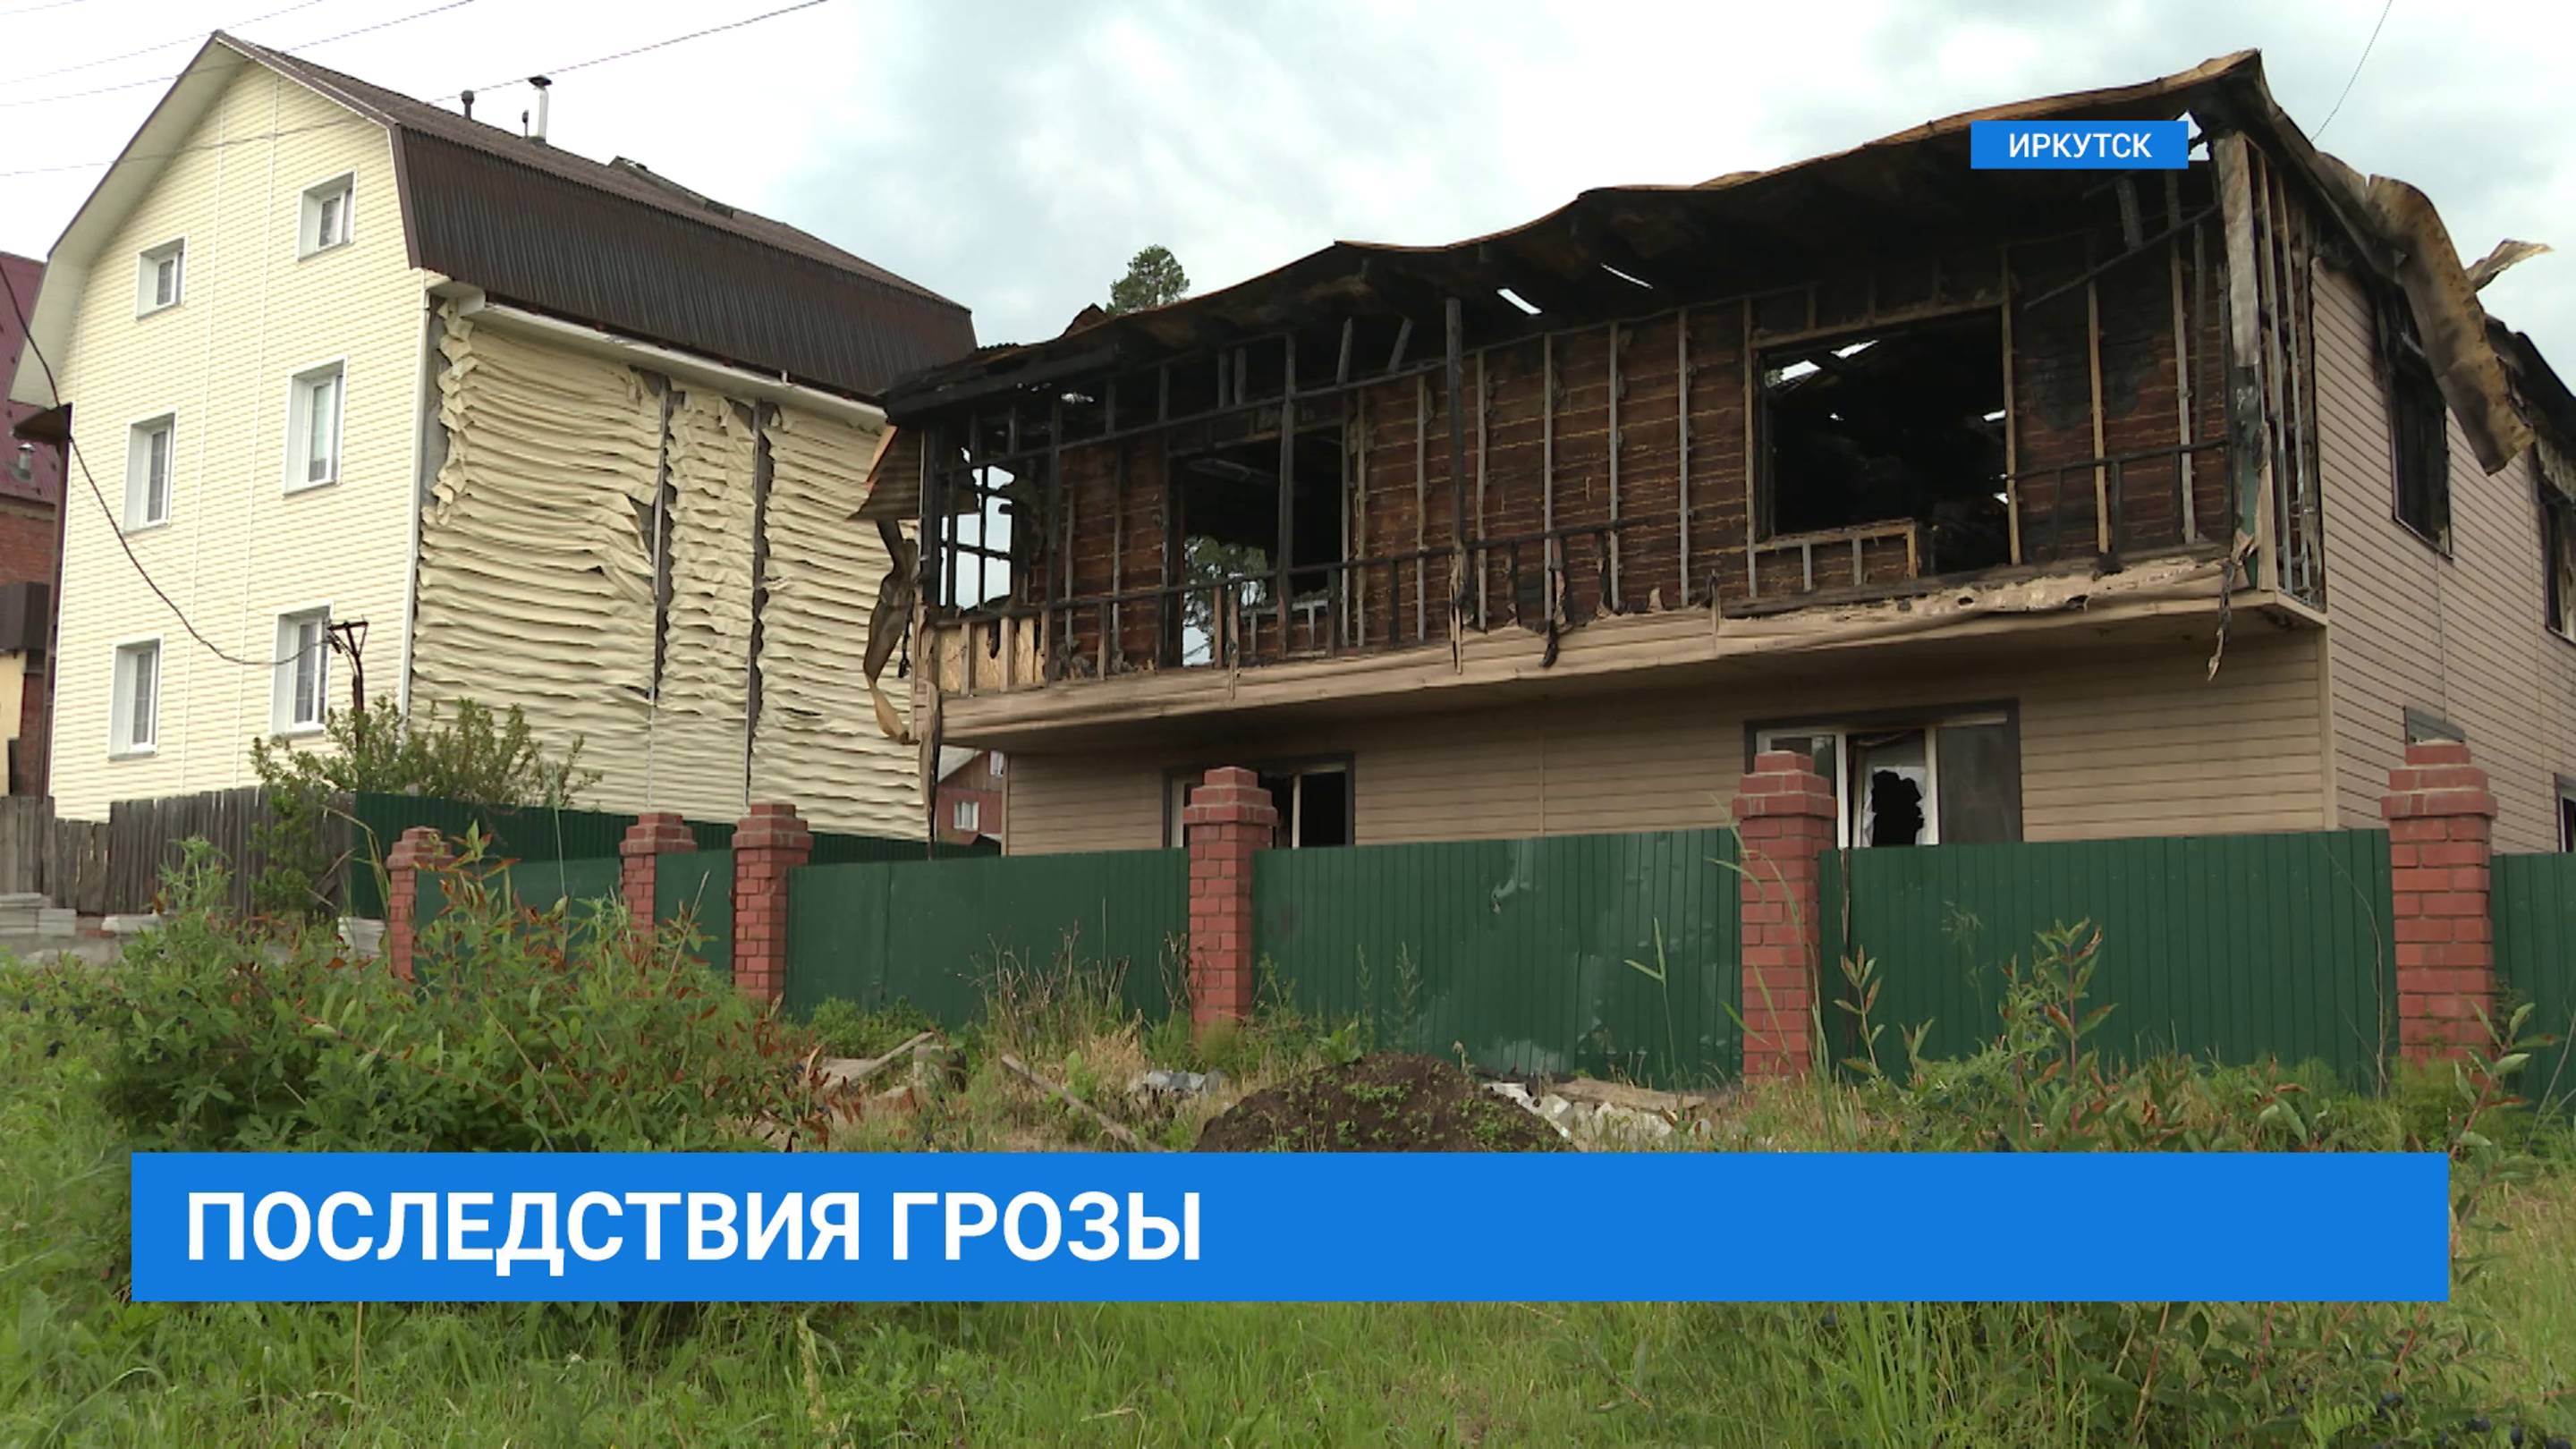 От удара молнии сгорел дом семьи Дороховых. Девять человек осталось без жилья